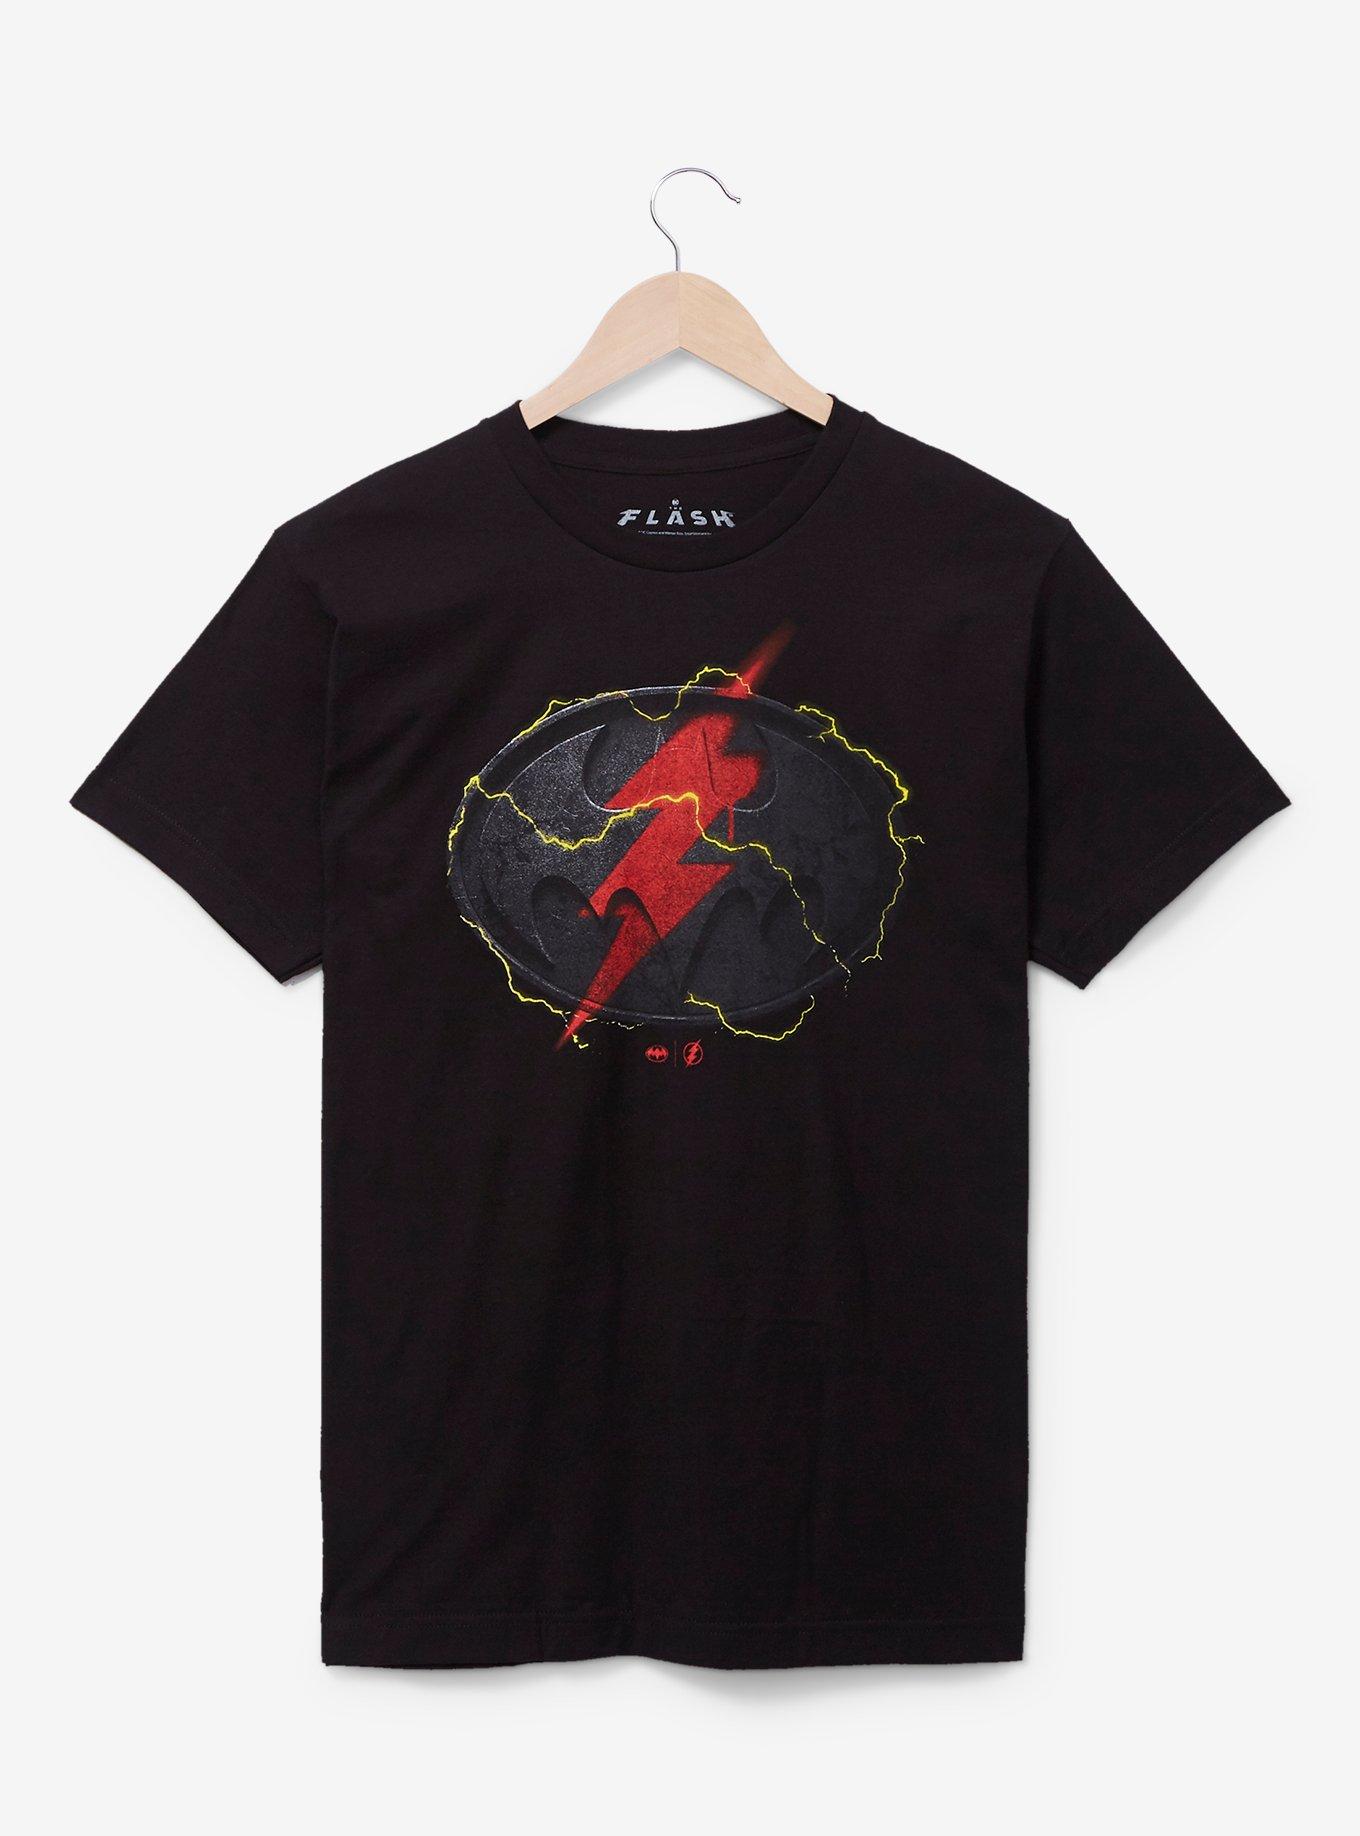 DC Comics The Flash Batman & Flash Logo T-Shirt, , hi-res